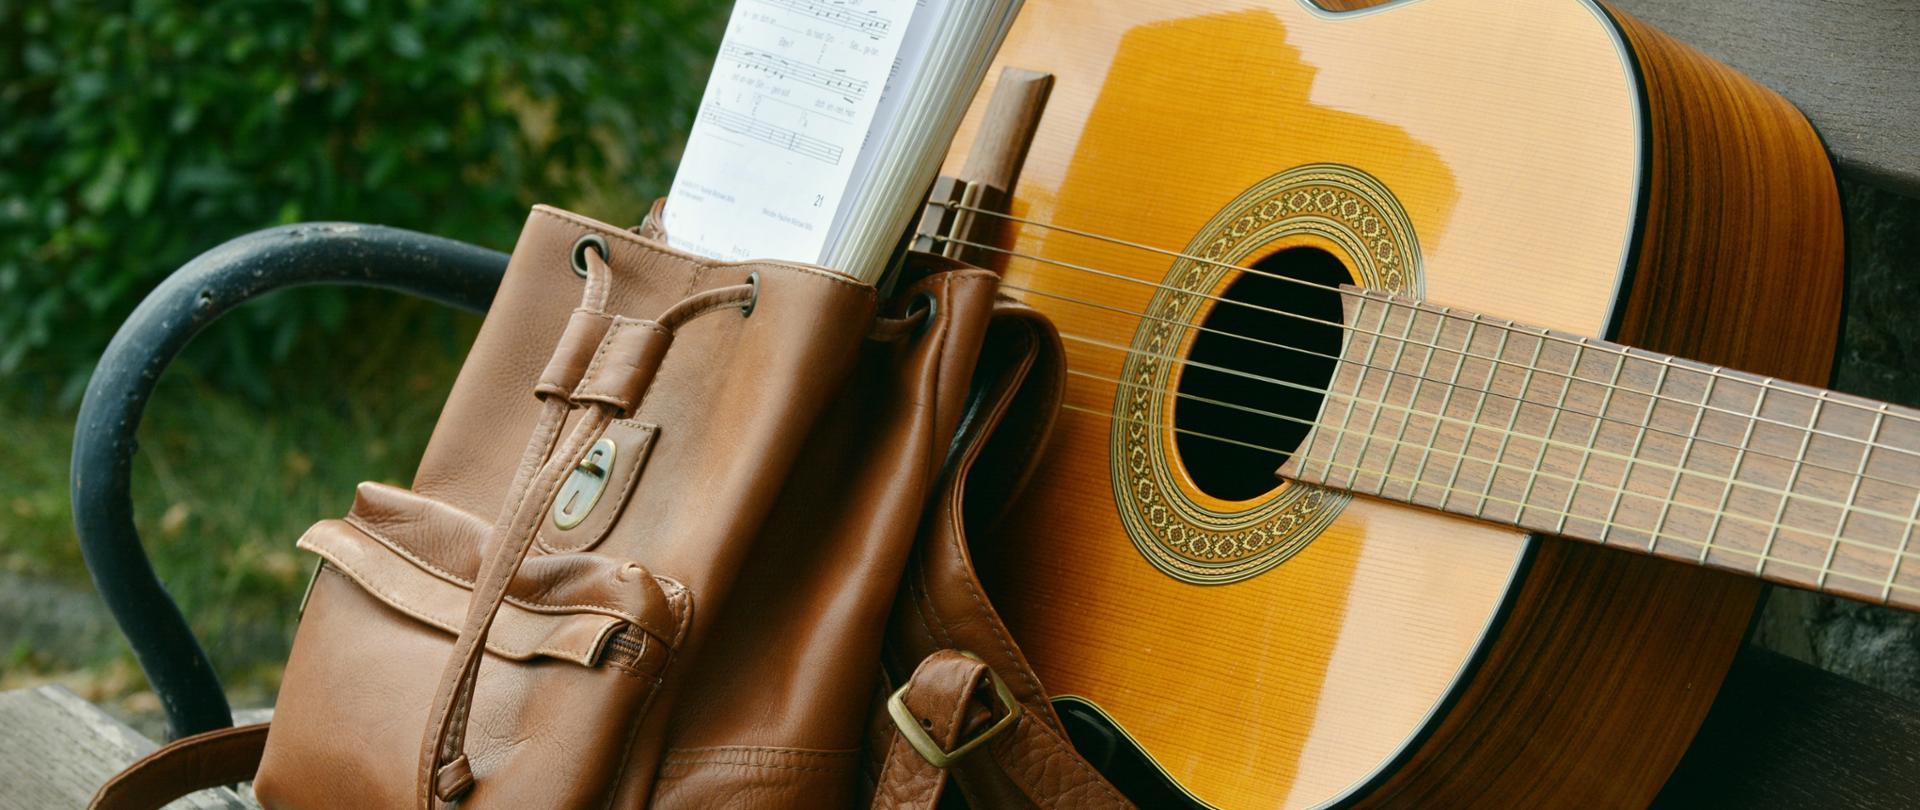 Zdjęcie przedstawiające gitarę leżącą obok plecaka z nutami na ławce.